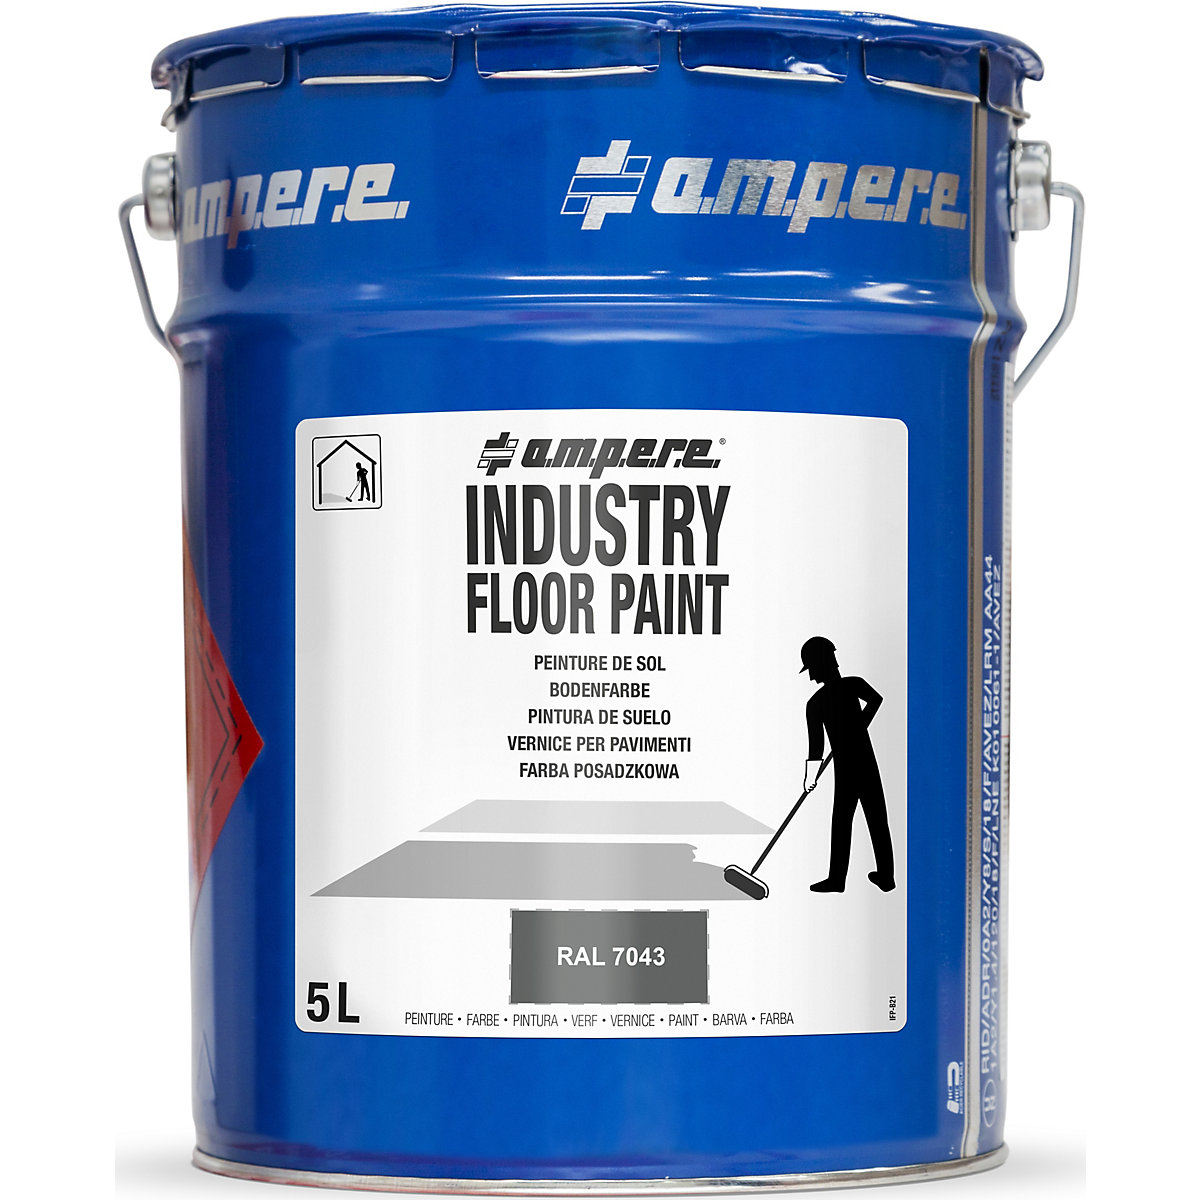 Farba do znakowania podłoża Industry Floor Paint® – Ampere, poj. 5 l, szara-4